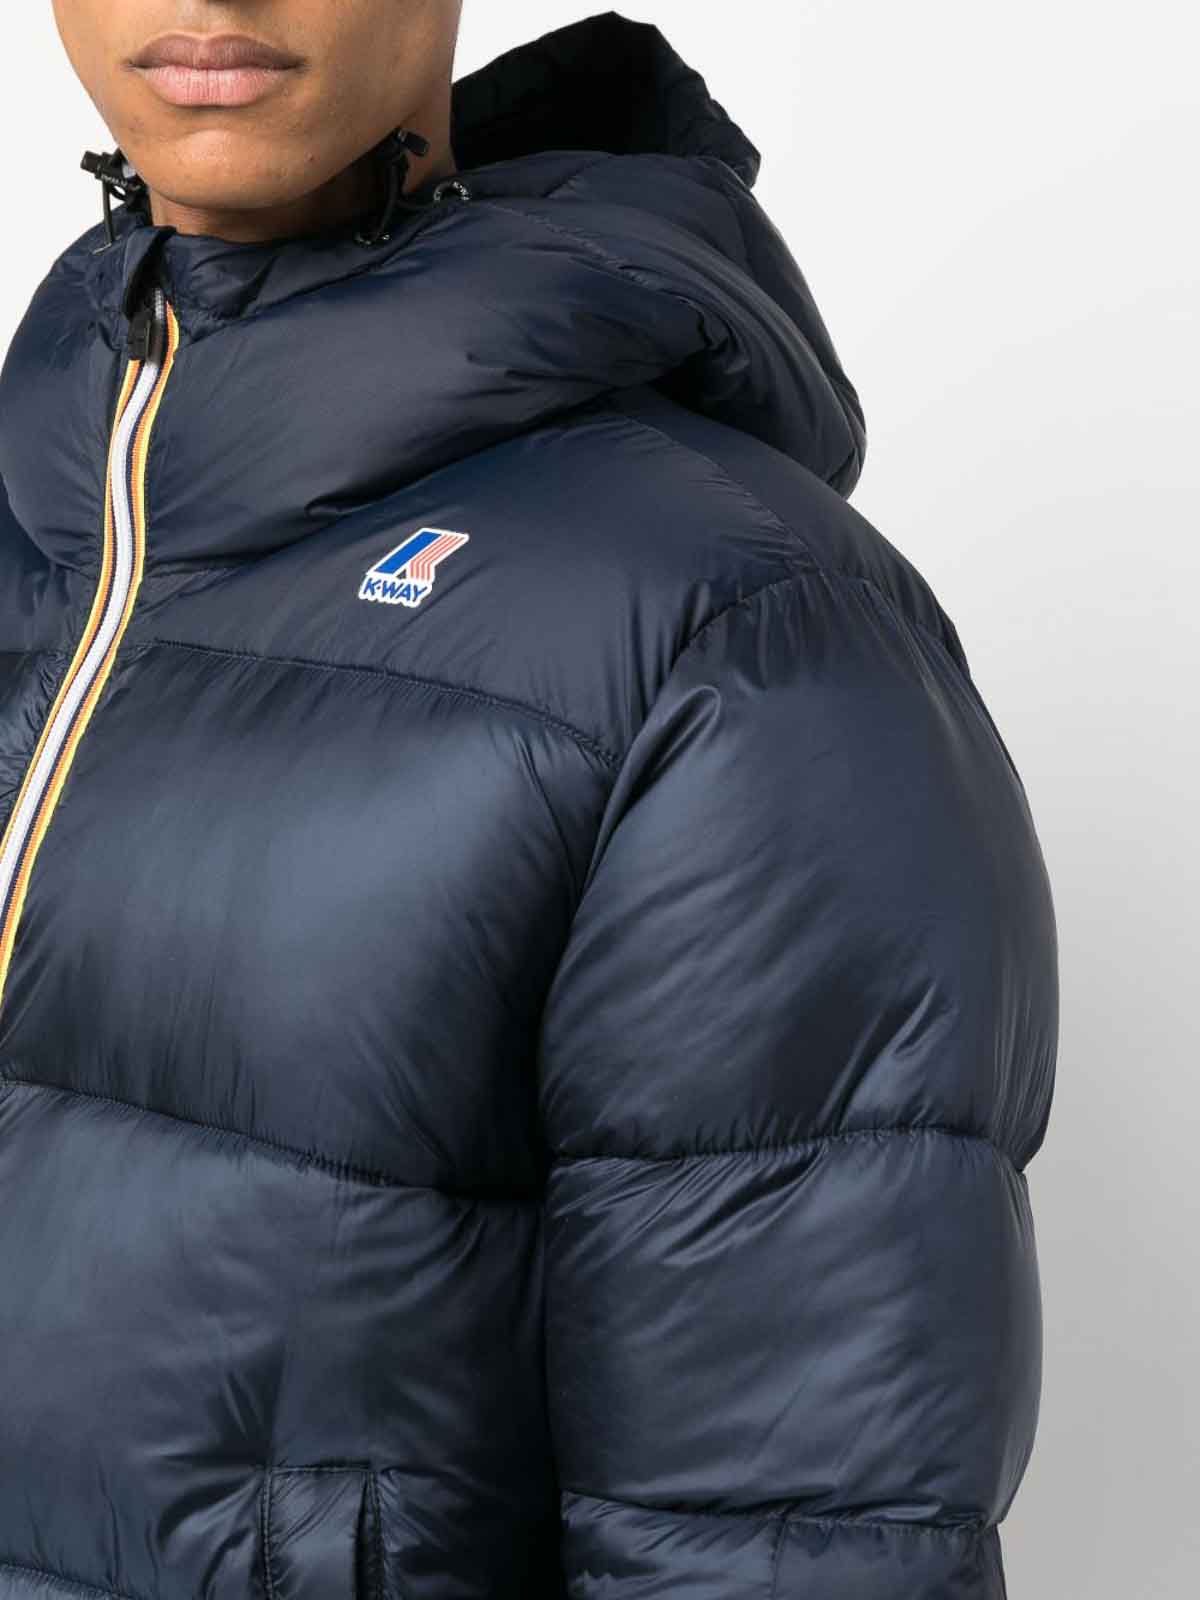 Casual jackets k-way - Le vrai 3.0 claude jacket - K5115RWLEVRAIK89